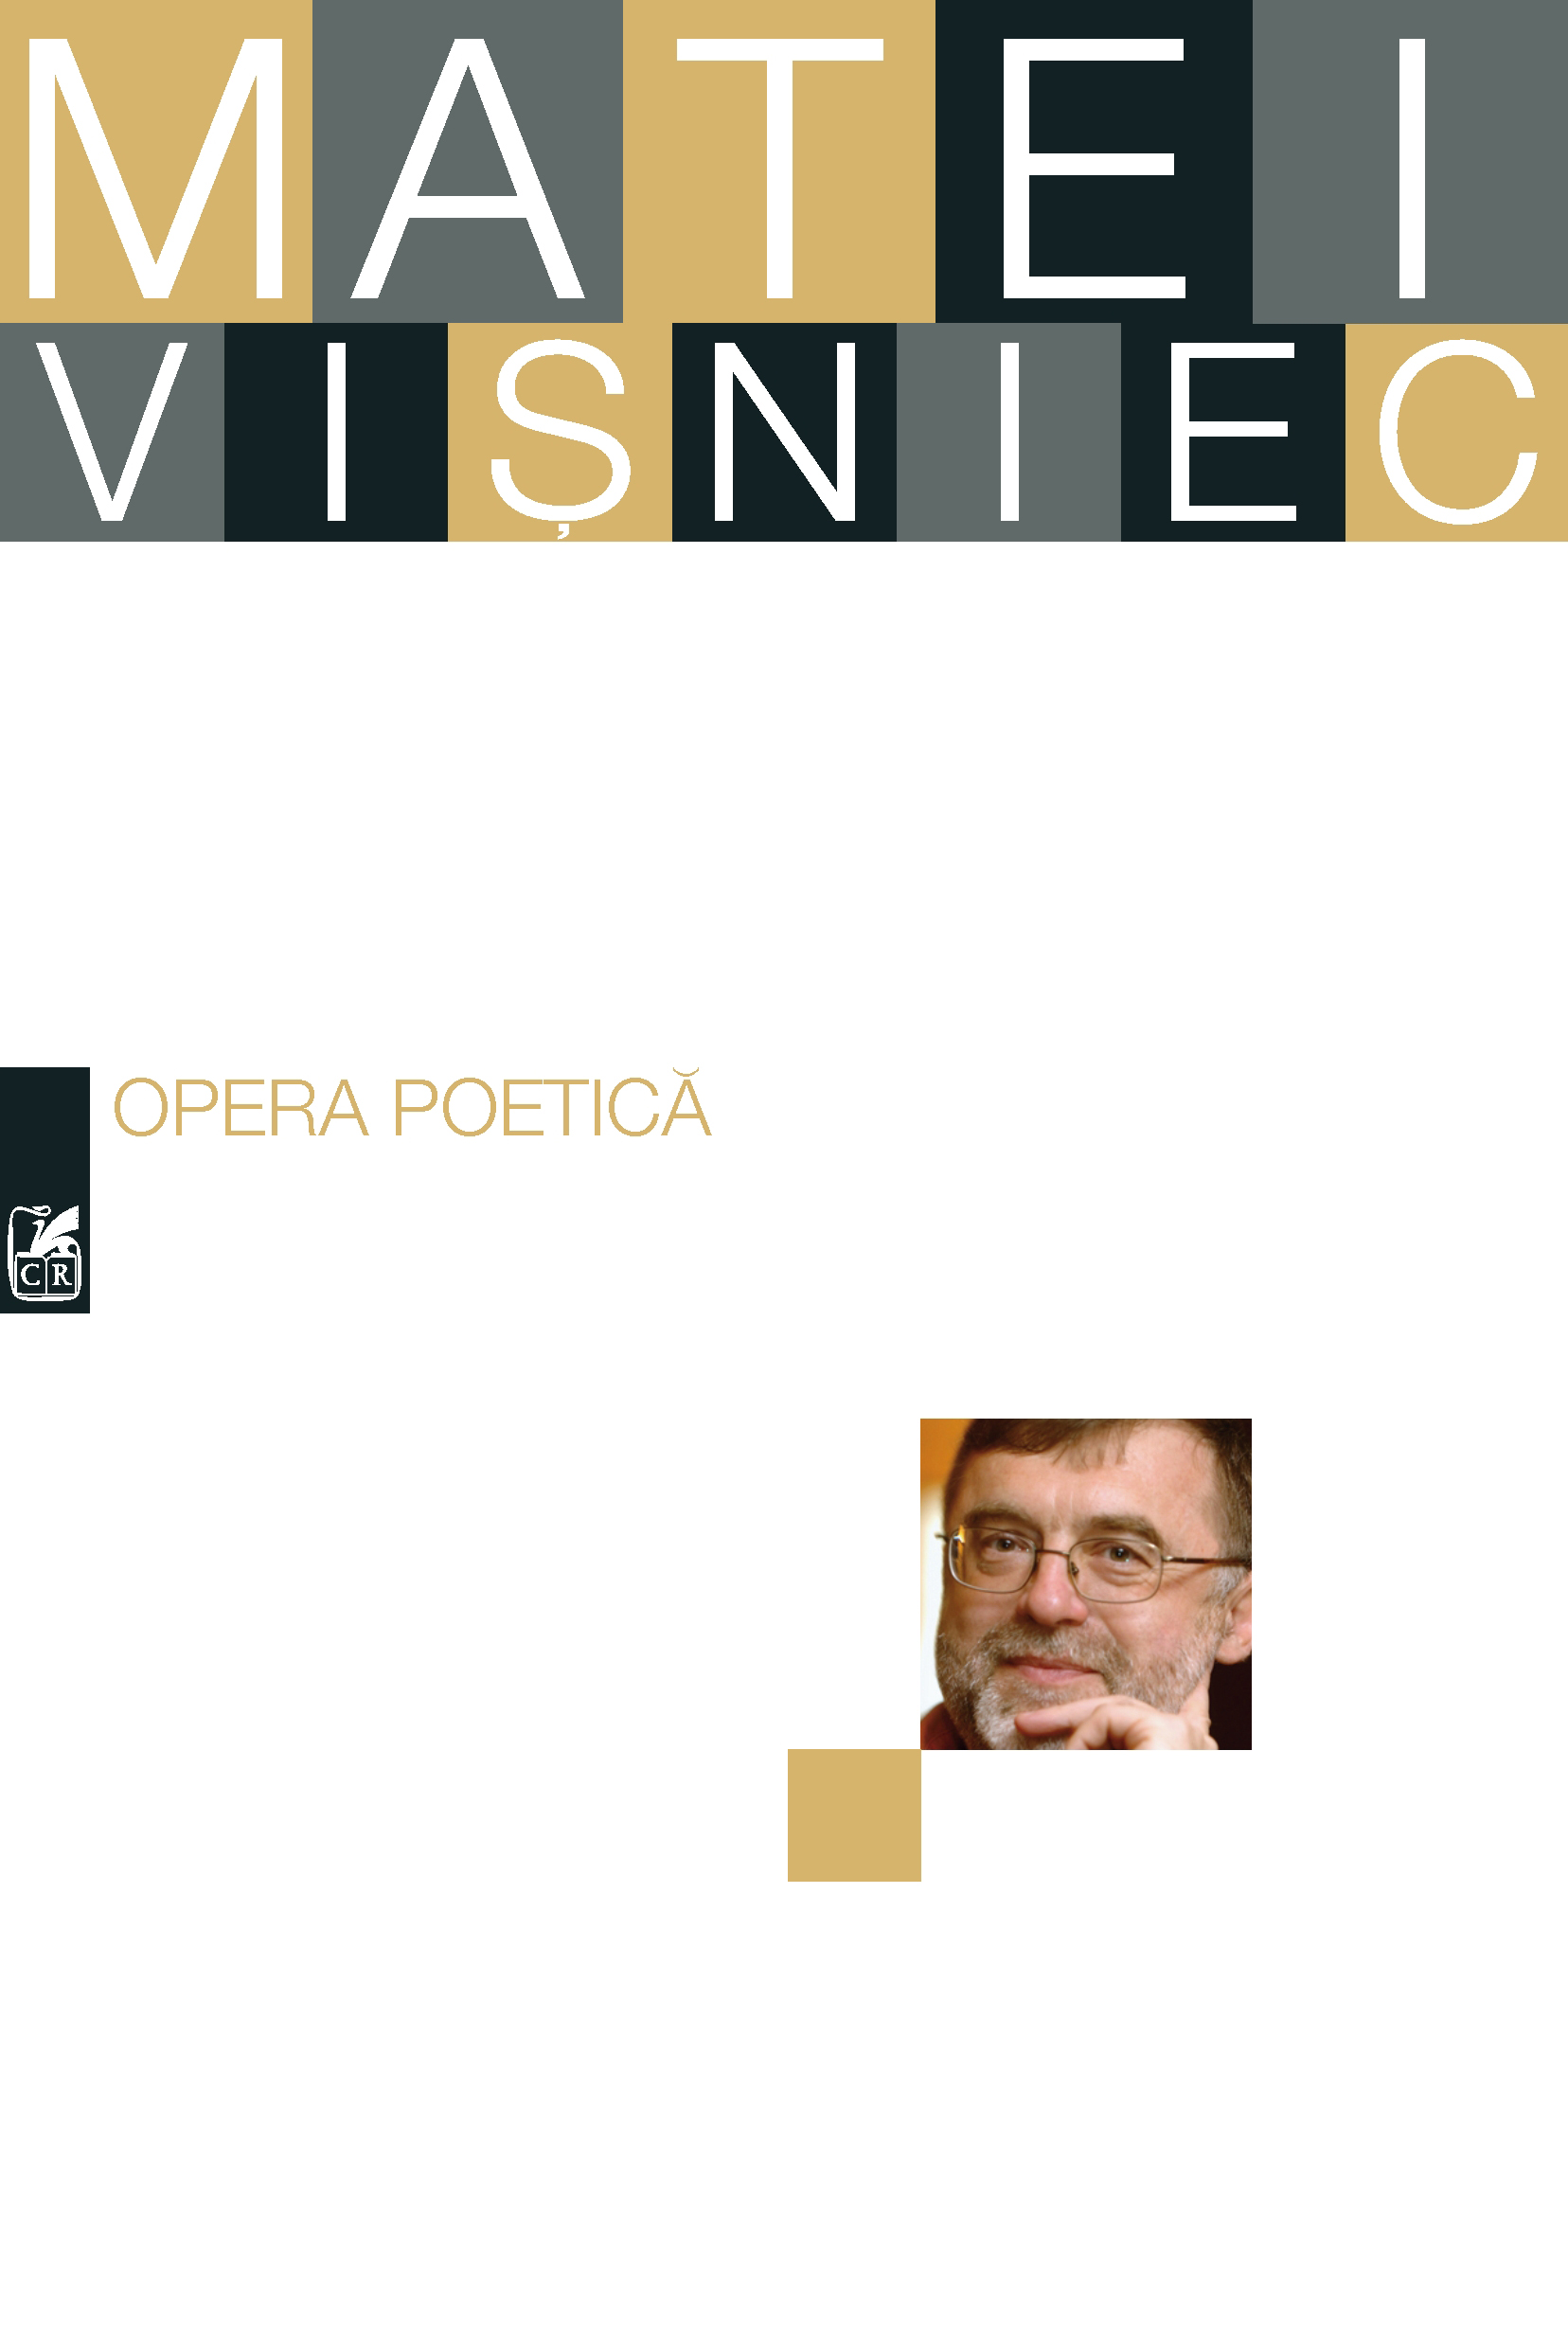 Opera poetica - Matei Visniec